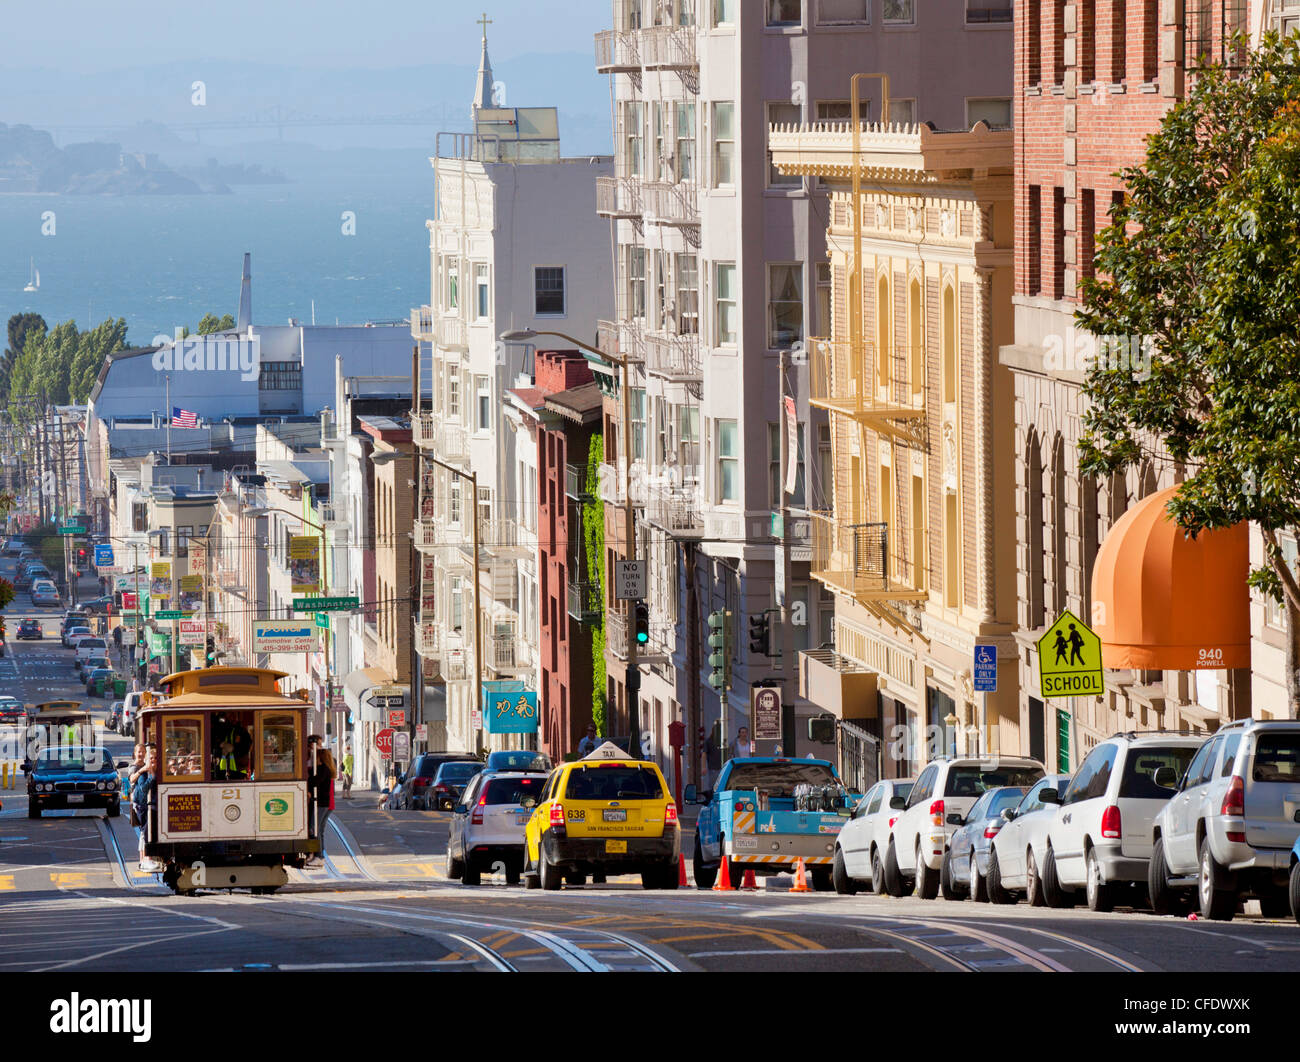 Funivie sul Powell-Mason via, con l'isola di Alcatraz in background, San Francisco, California, Stati Uniti d'America Foto Stock